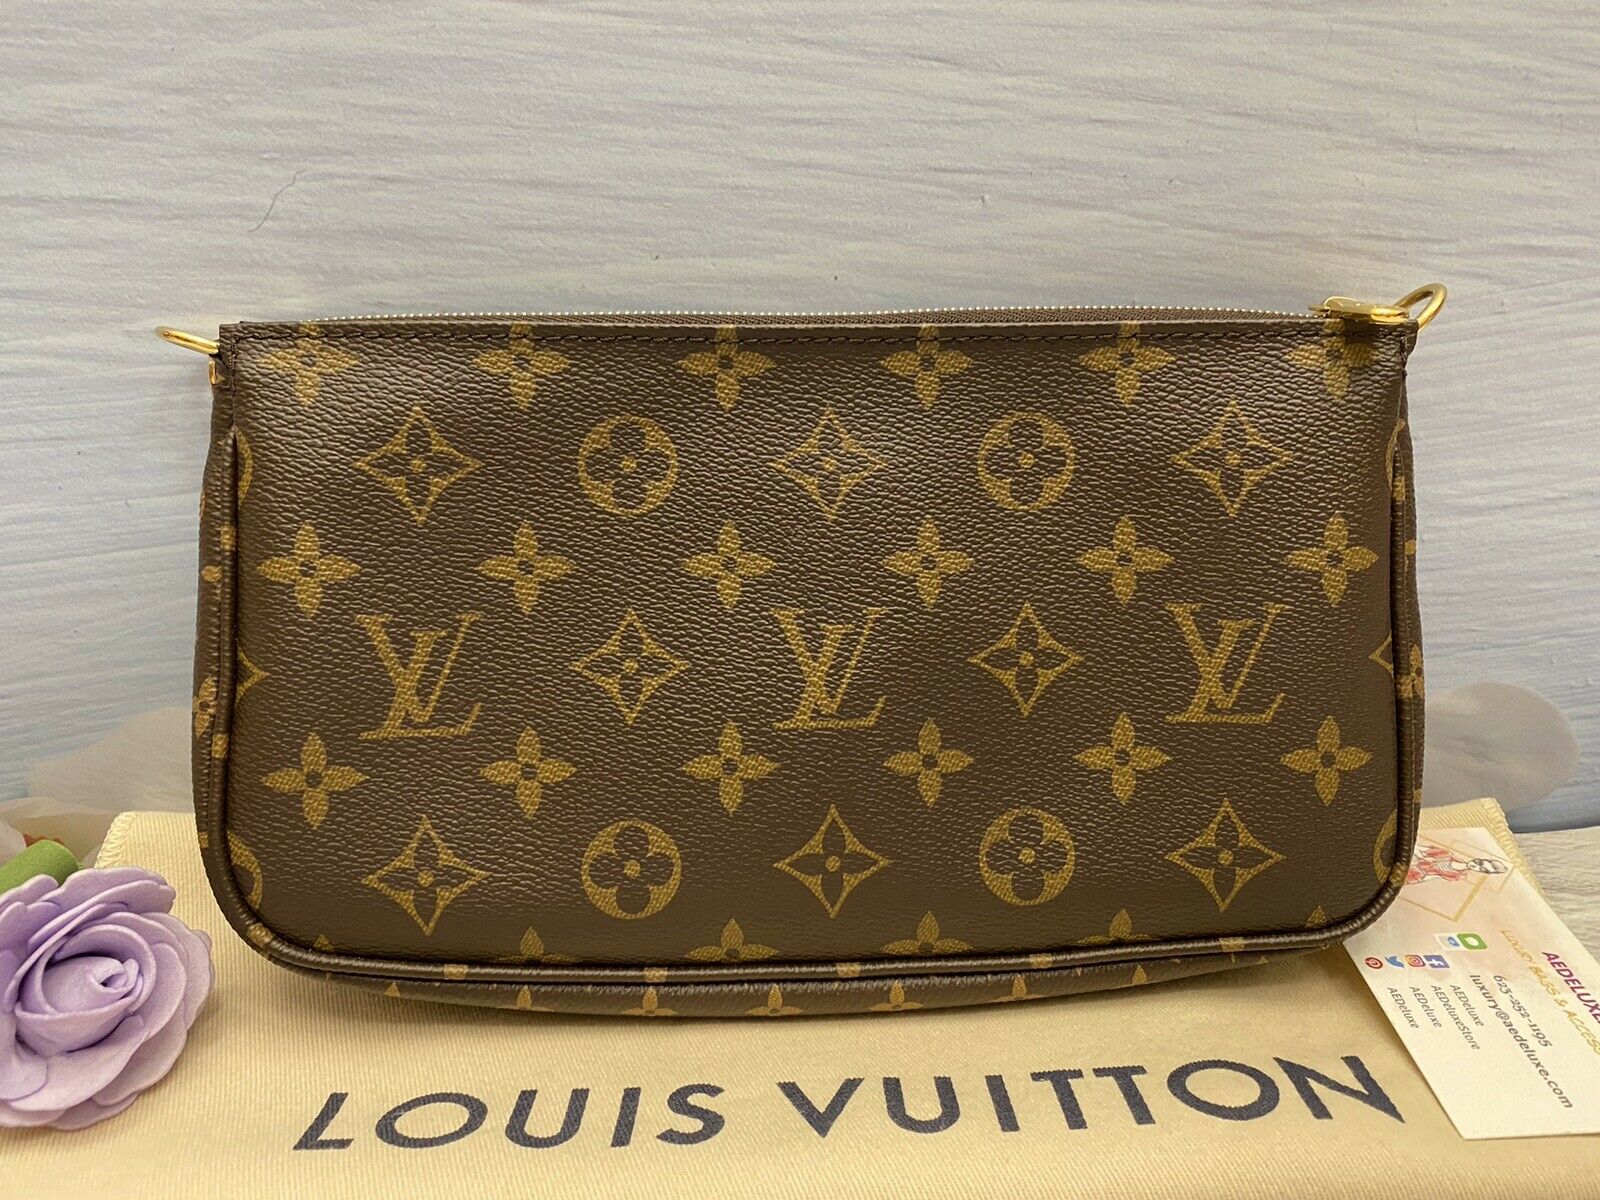 Louis Vuitton Wallet Dust Bag